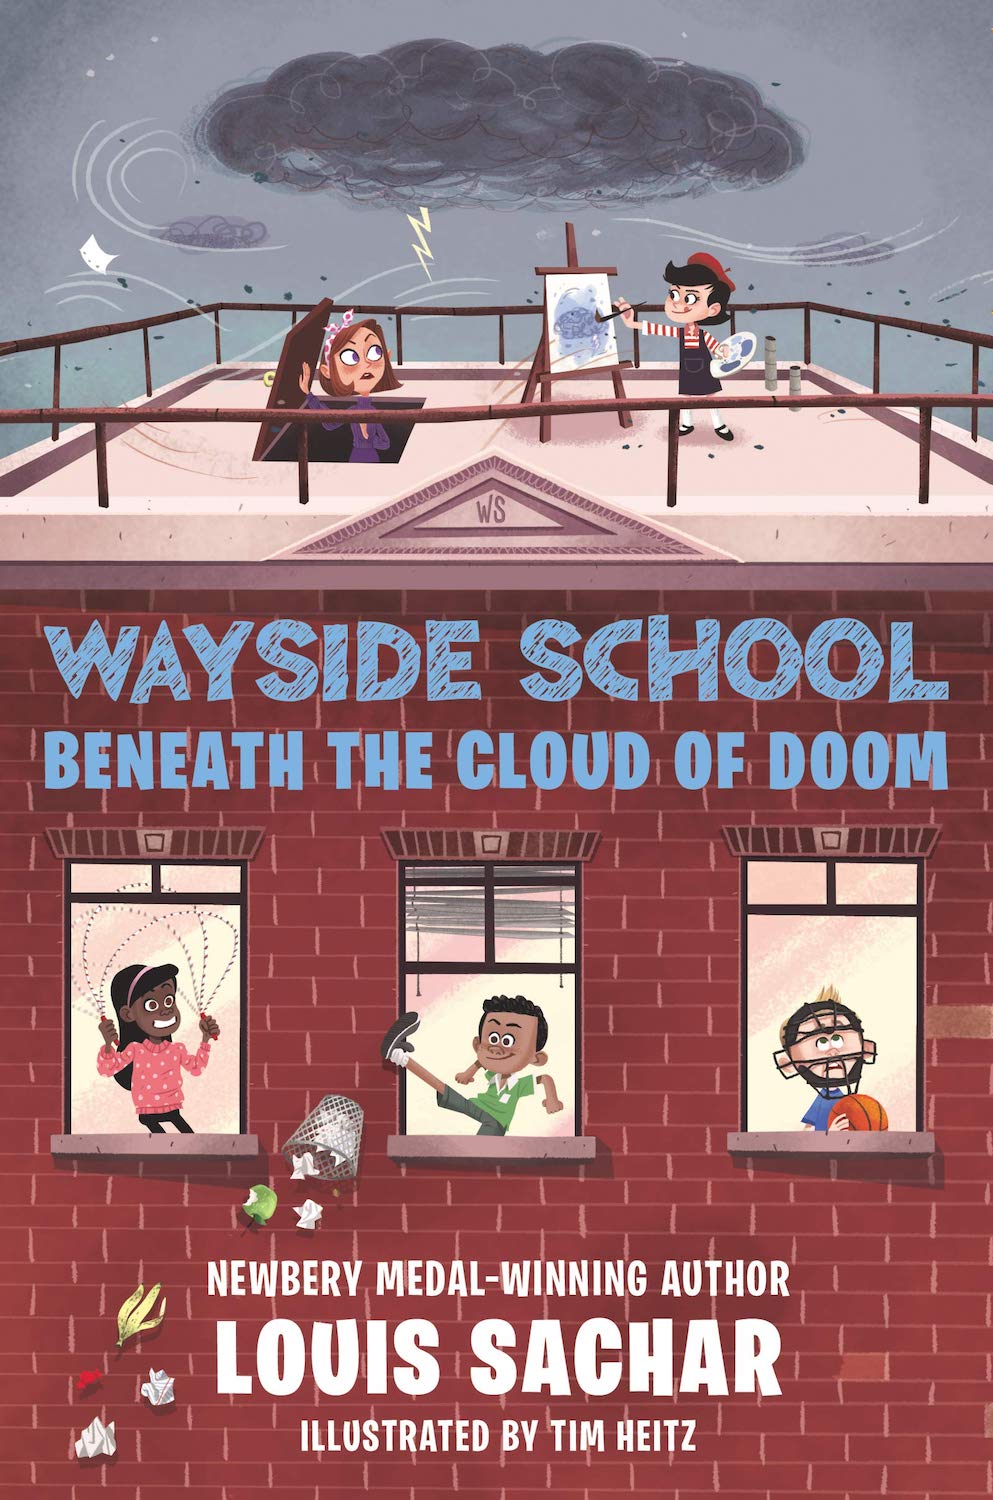 Wayside School Beneath the Cloud of Doom MSL Book Review